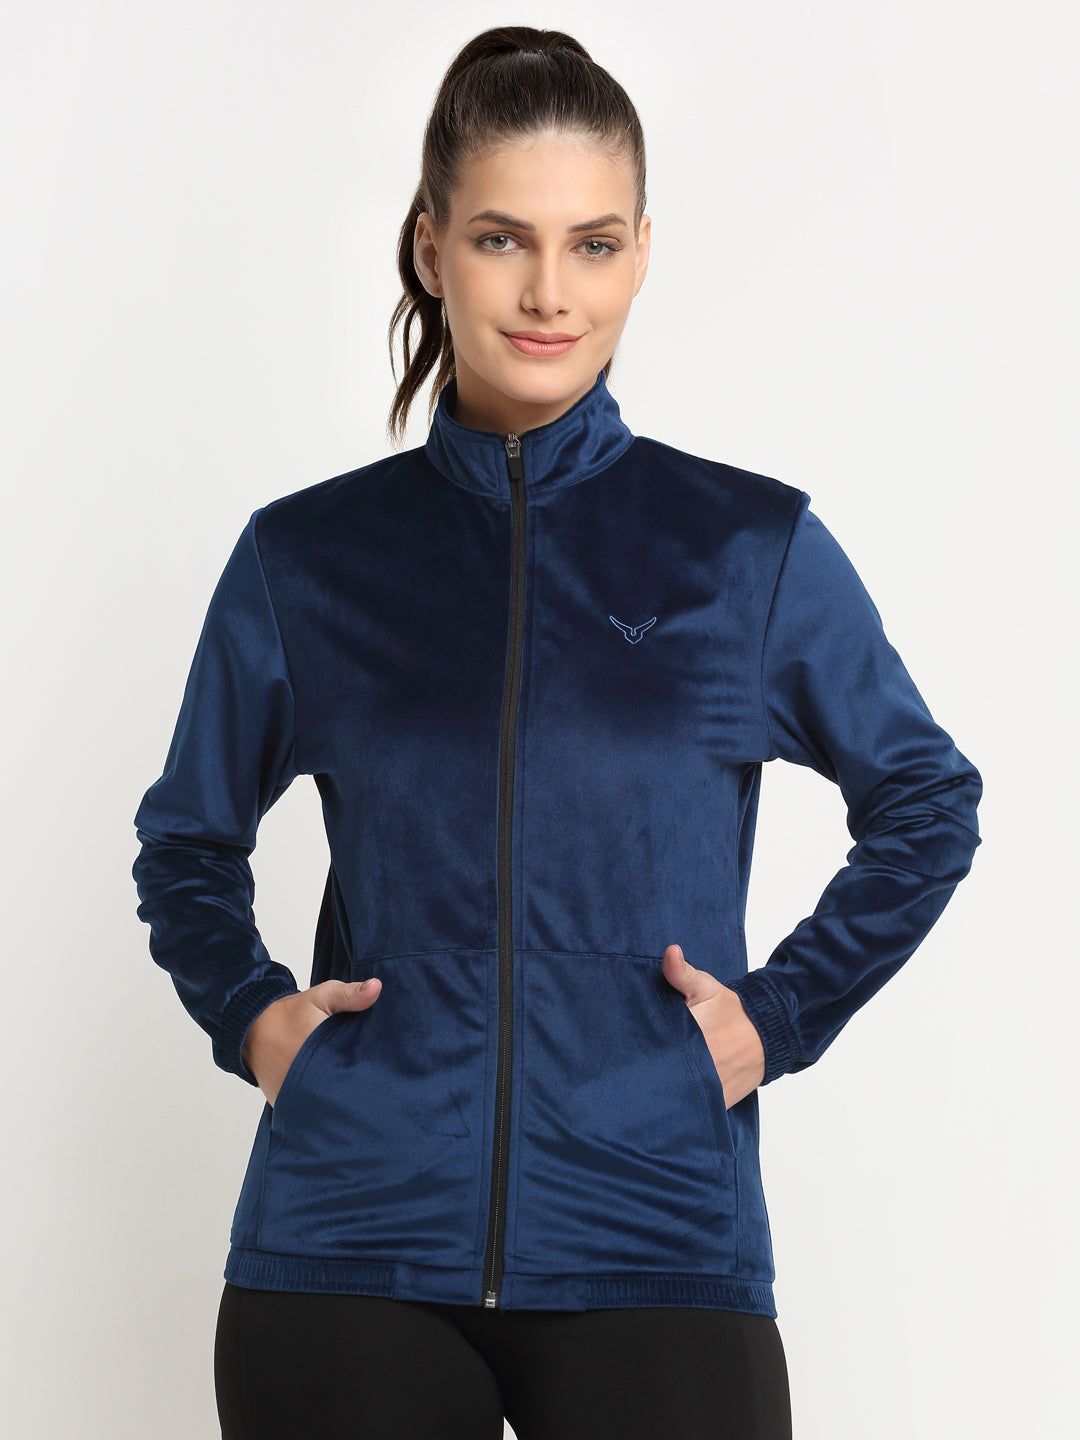 Zip Up Hoodie Womens Casual Plain Thick Full-zip Jacket Hooded Sweatshirt  Cotton Fleece Coat with Pockets - Walmart.com